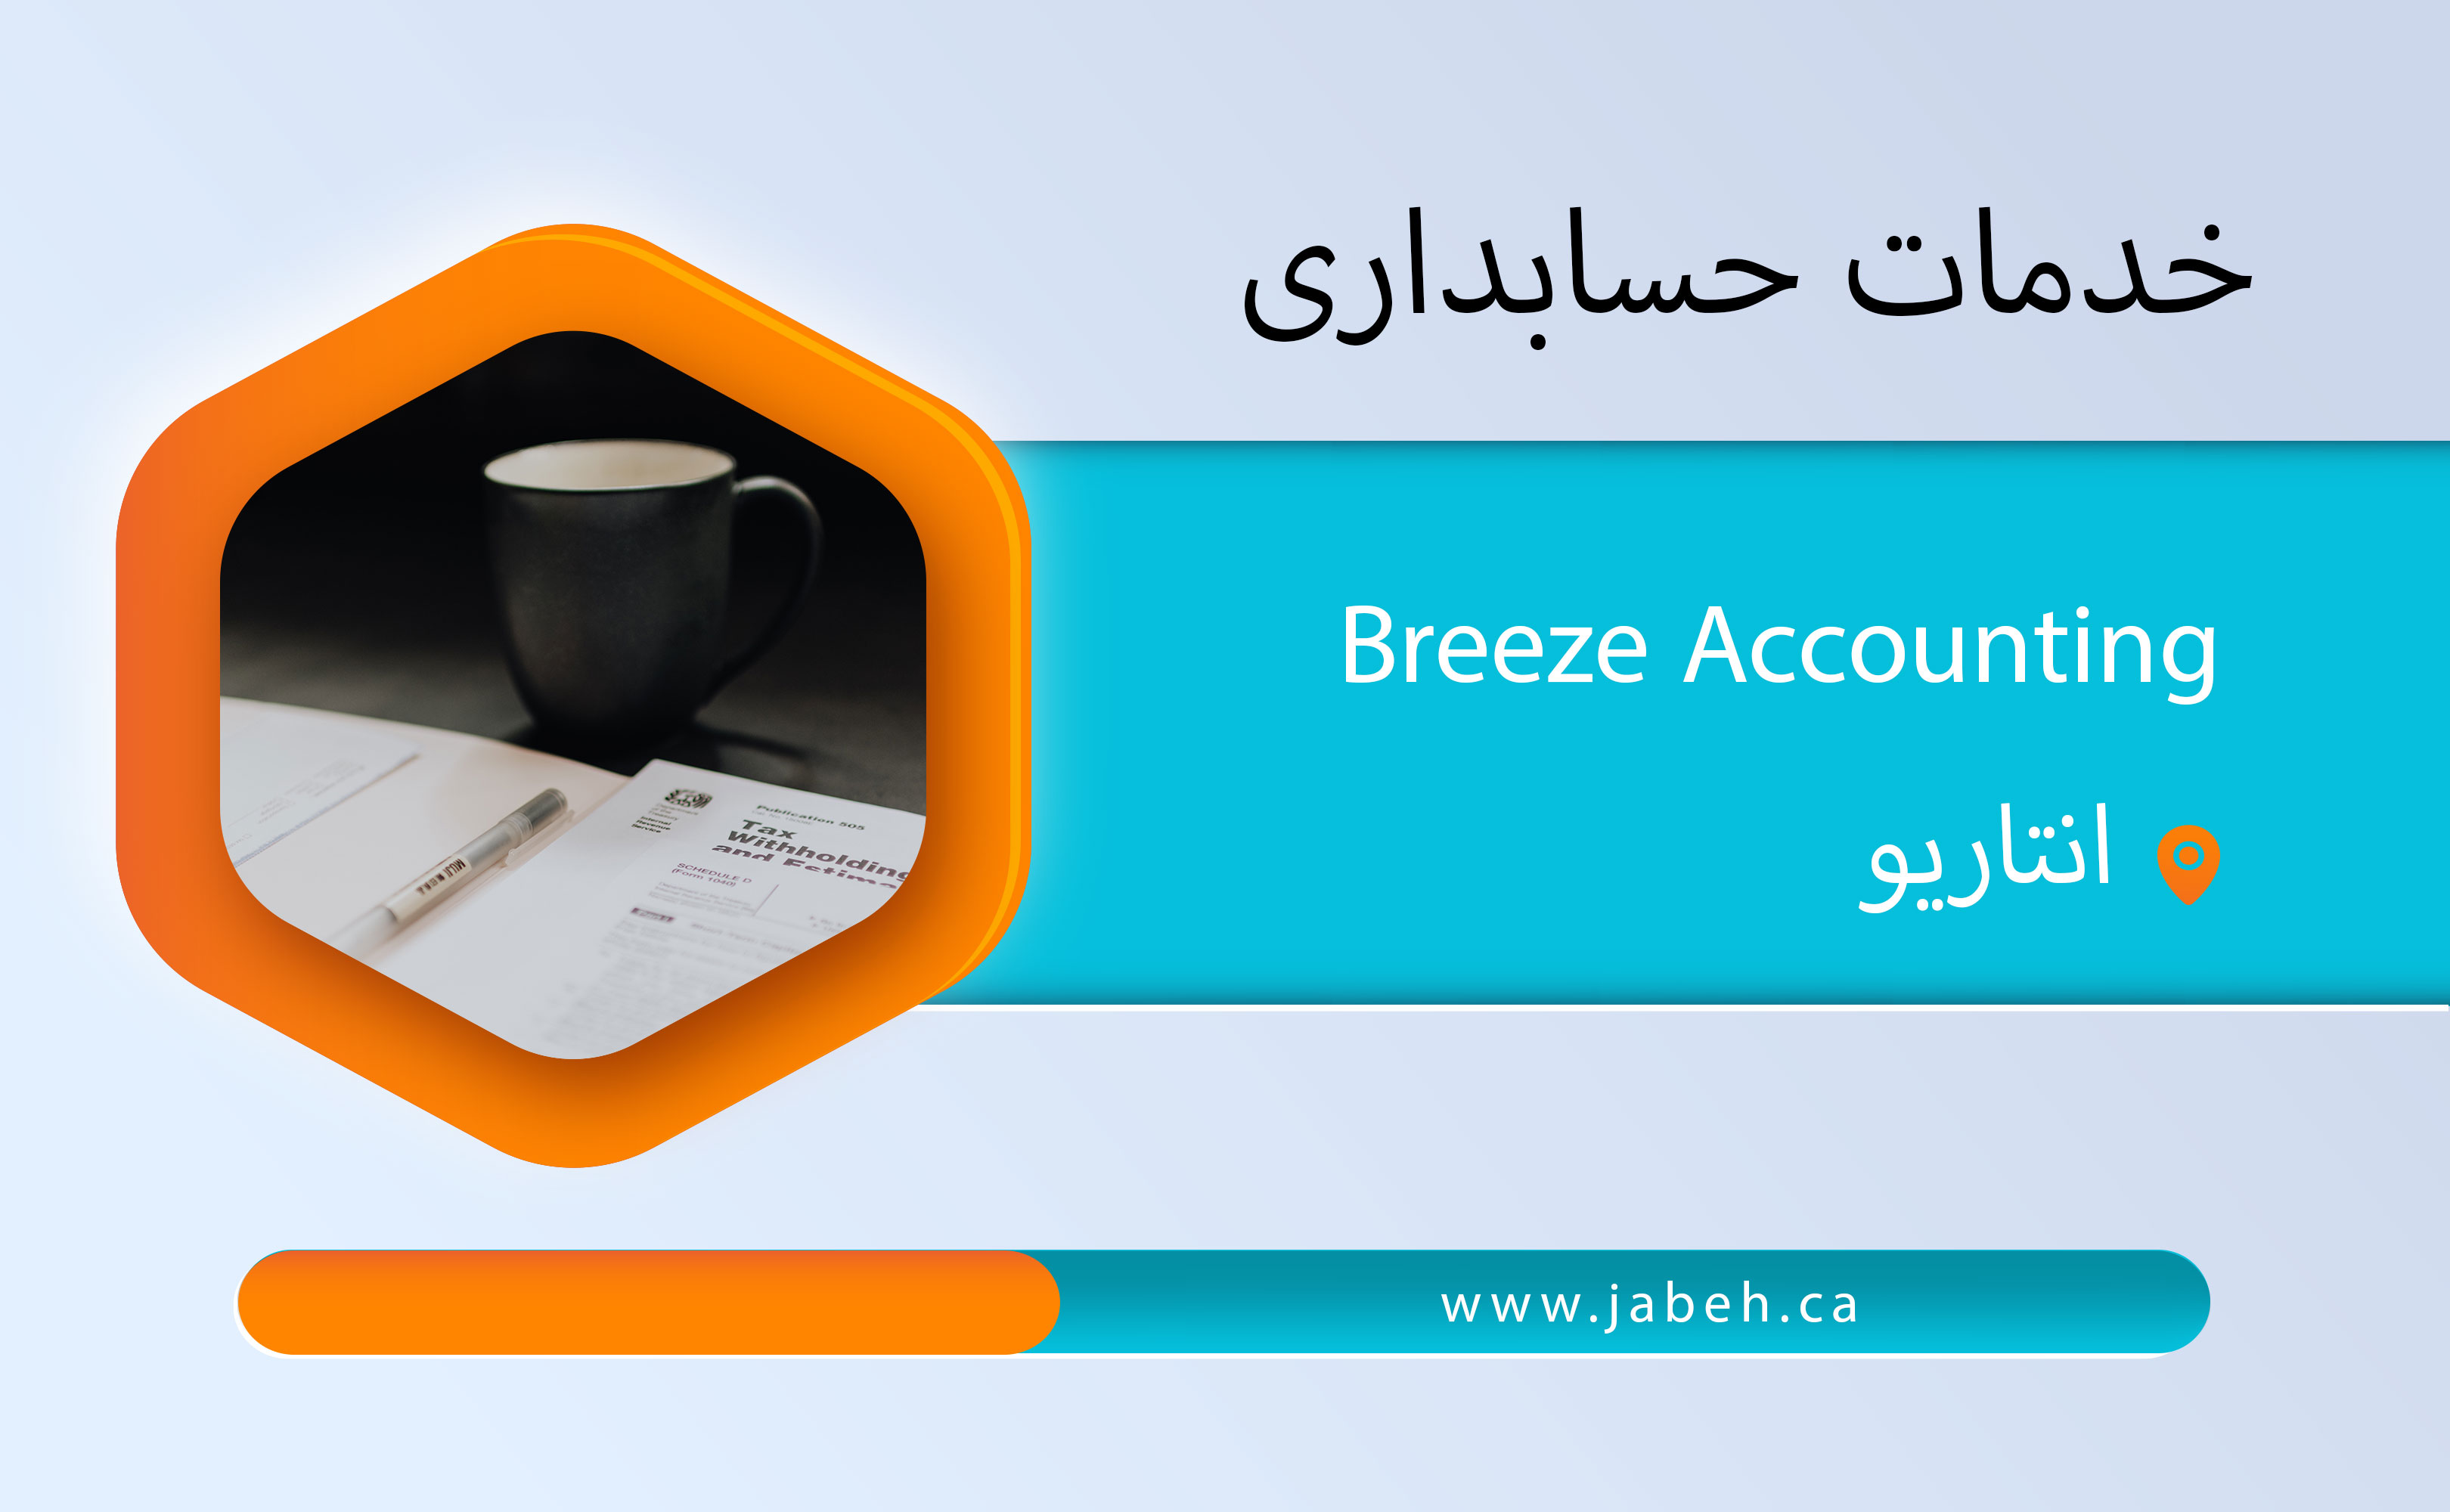 خدمات حسابداری و مالیانی ایرانی  Breeze Accounting در انتاریو